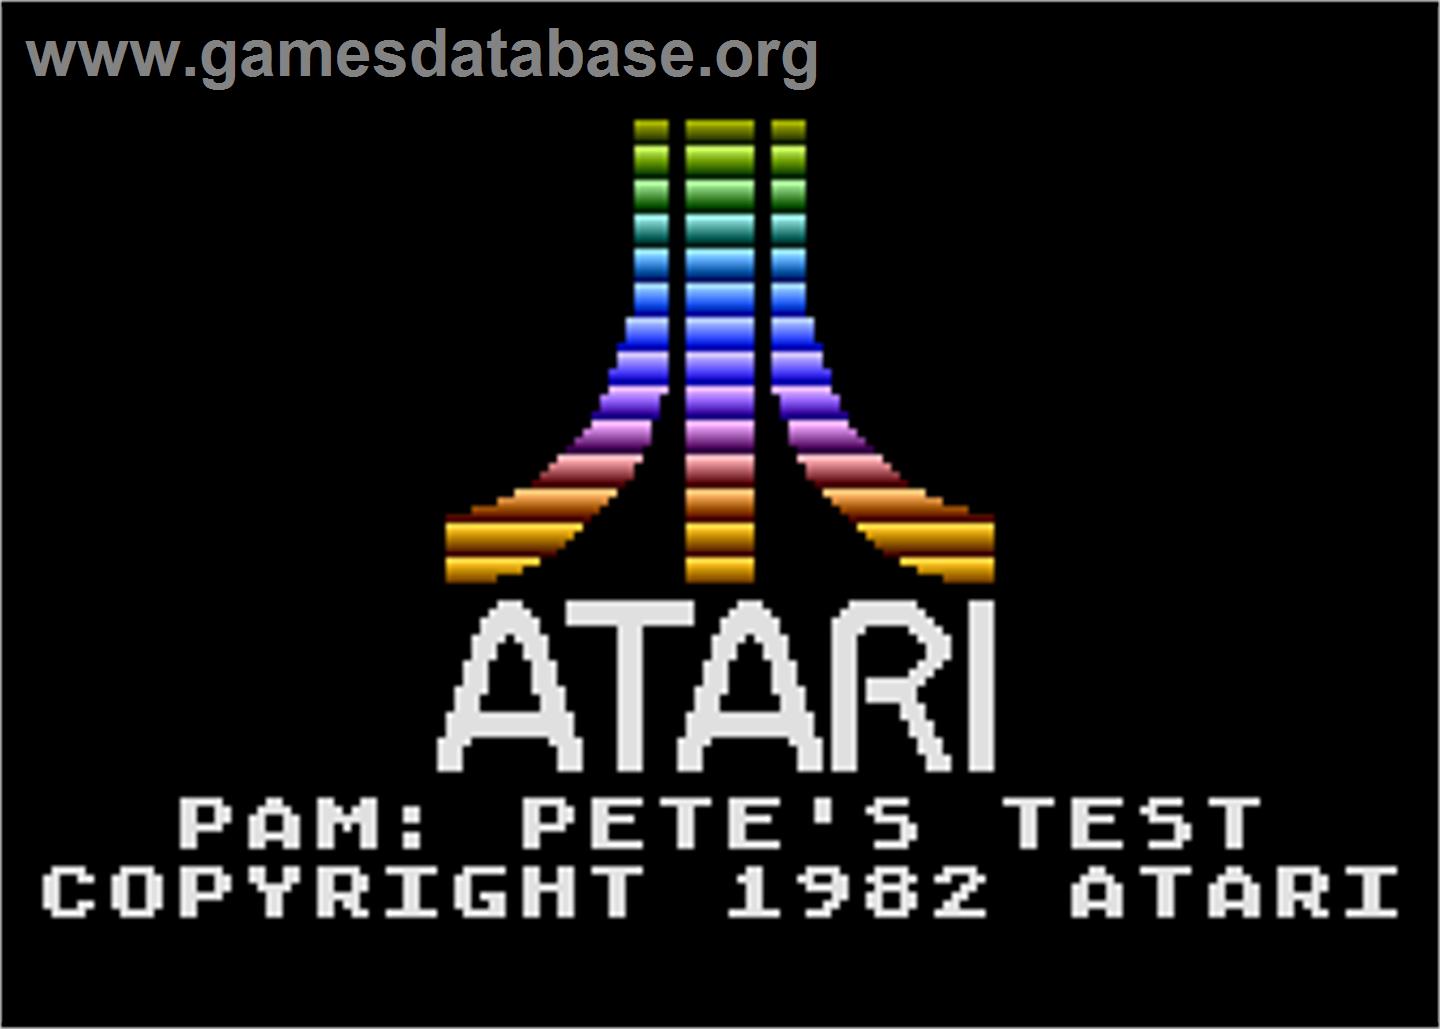 Atari PAM: Pete's Test - Atari 5200 - Artwork - Title Screen